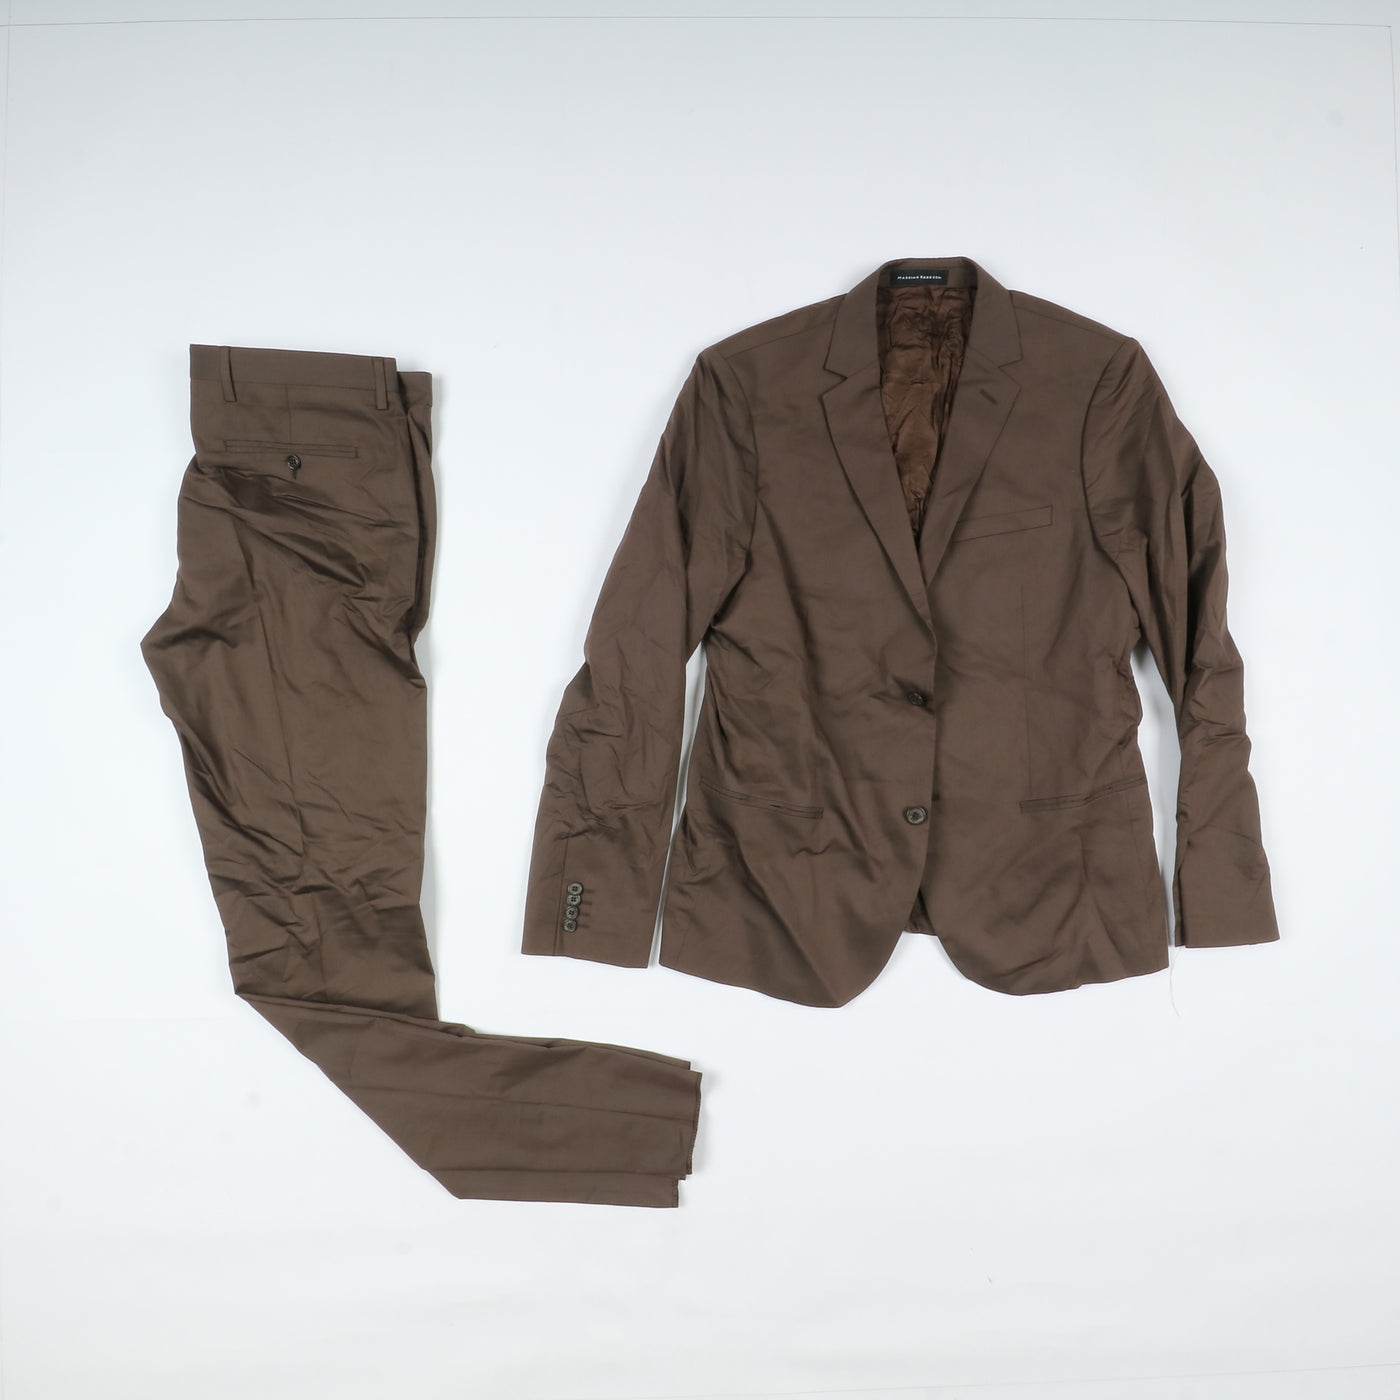 Stock 16pz completi eleganti uomo nuovi Giacca e pantalone deadstock vintage